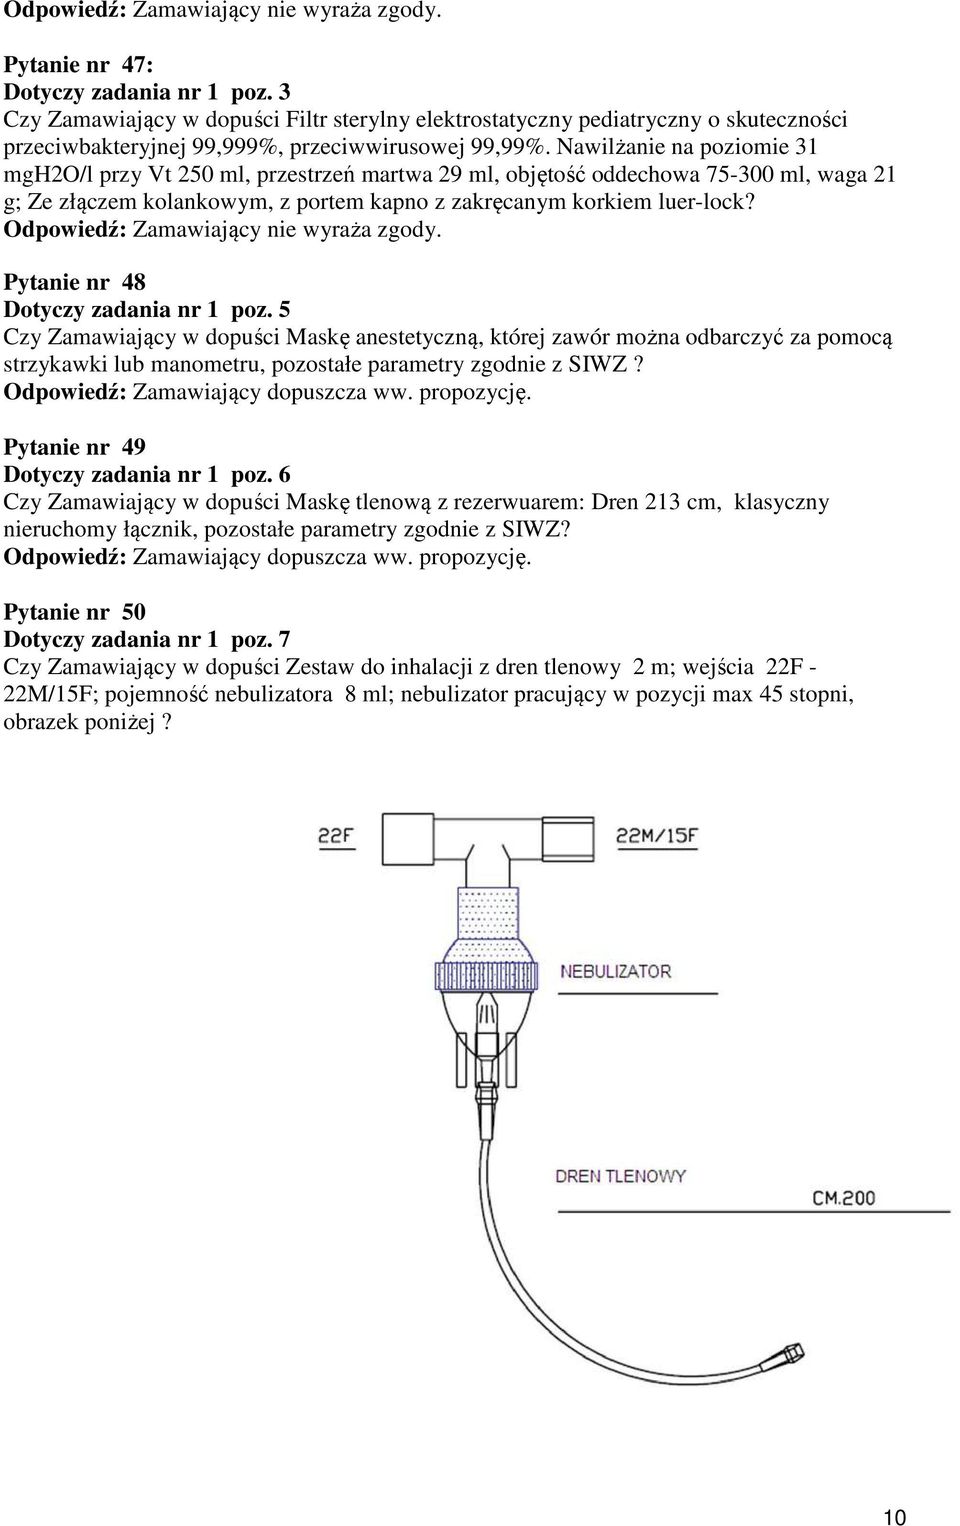 Pytanie nr 48 Dotyczy zadania nr 1 poz. 5 Czy Zamawiający w dopuści Maskę anestetyczną, której zawór można odbarczyć za pomocą strzykawki lub manometru, pozostałe parametry zgodnie z SIWZ?